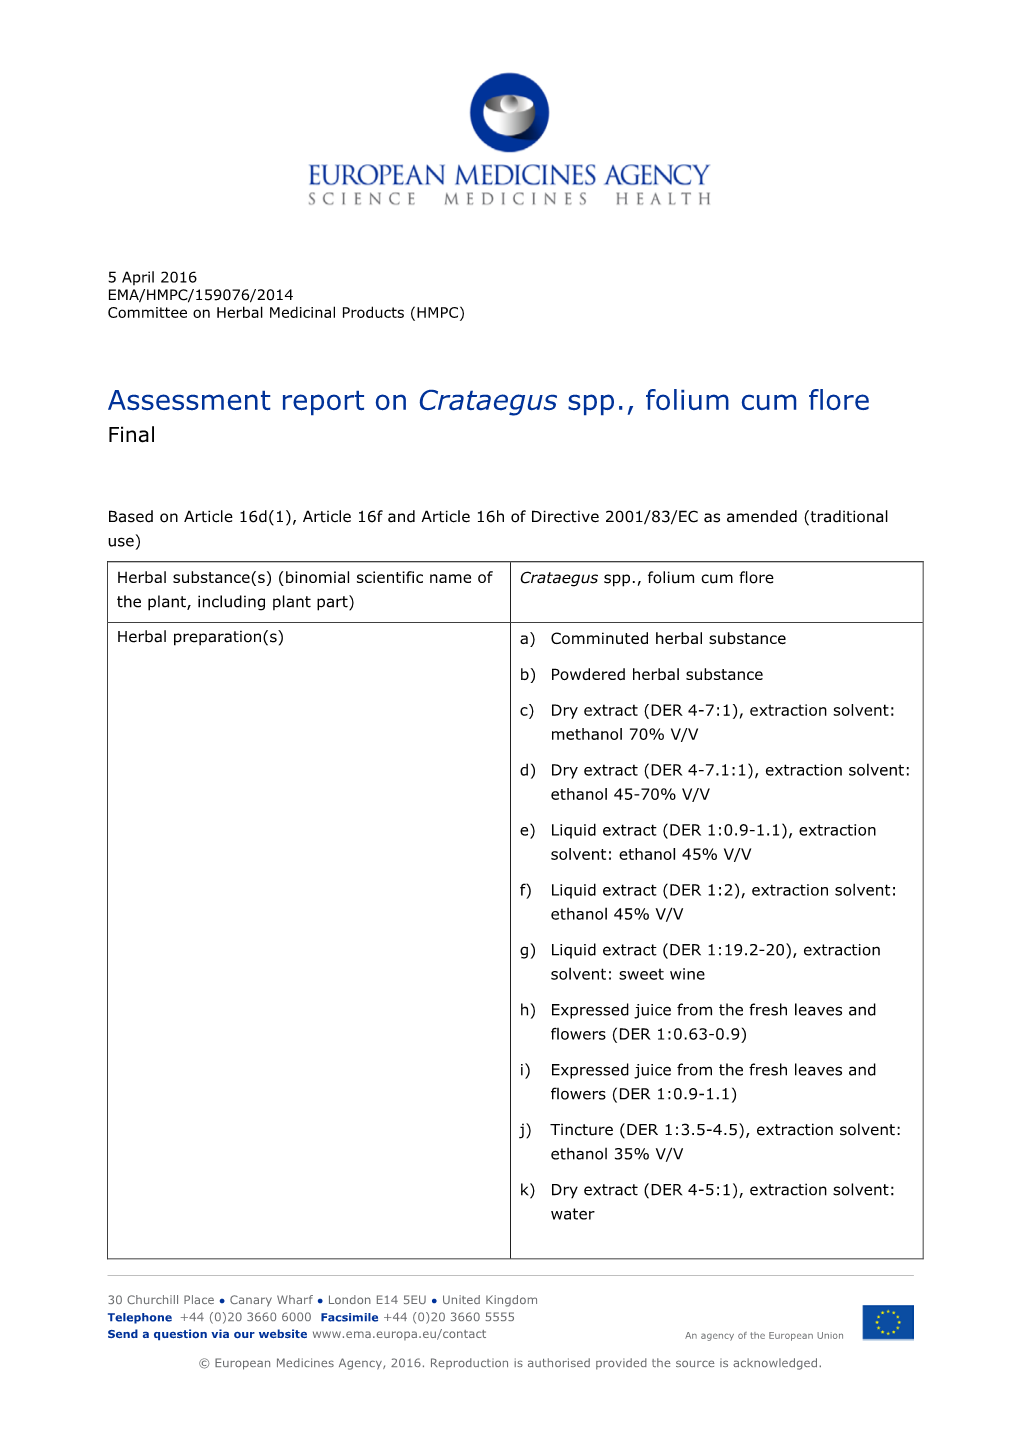 Assessment Report on Crataegus Spp., Folium Cum Flore Final